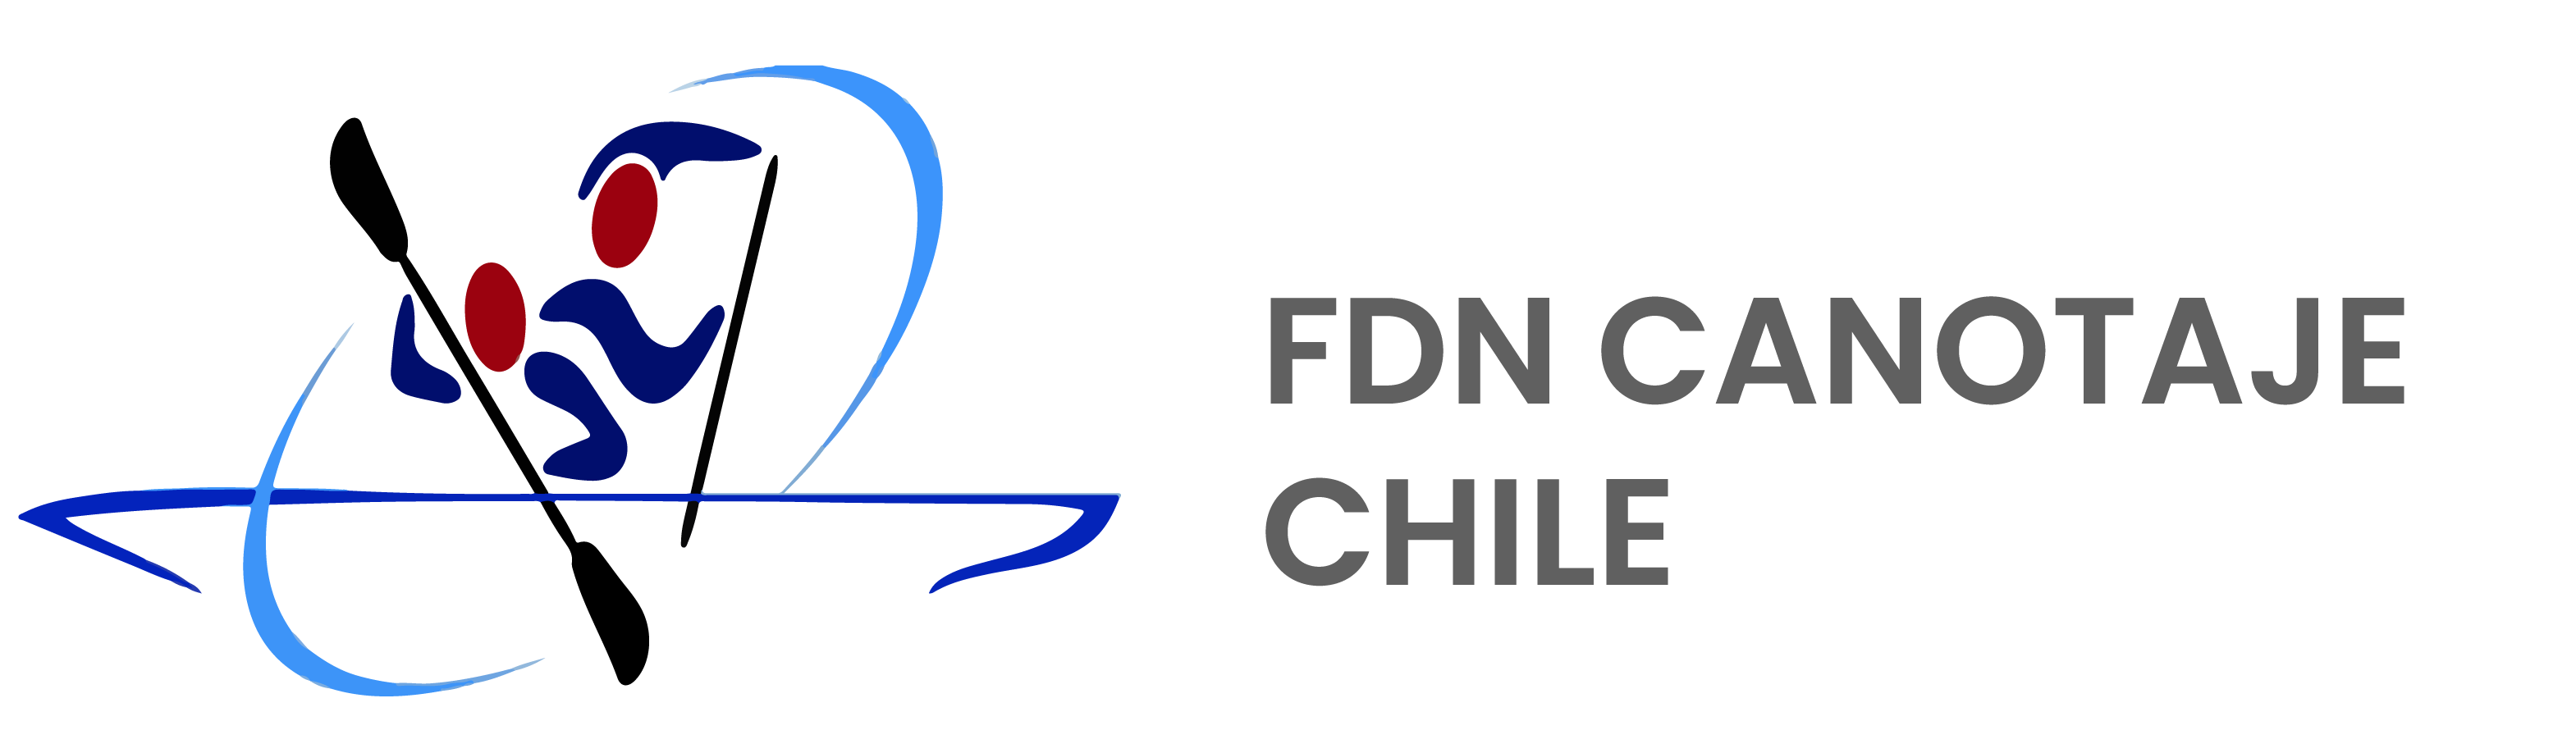 FDN Canotaje Chile